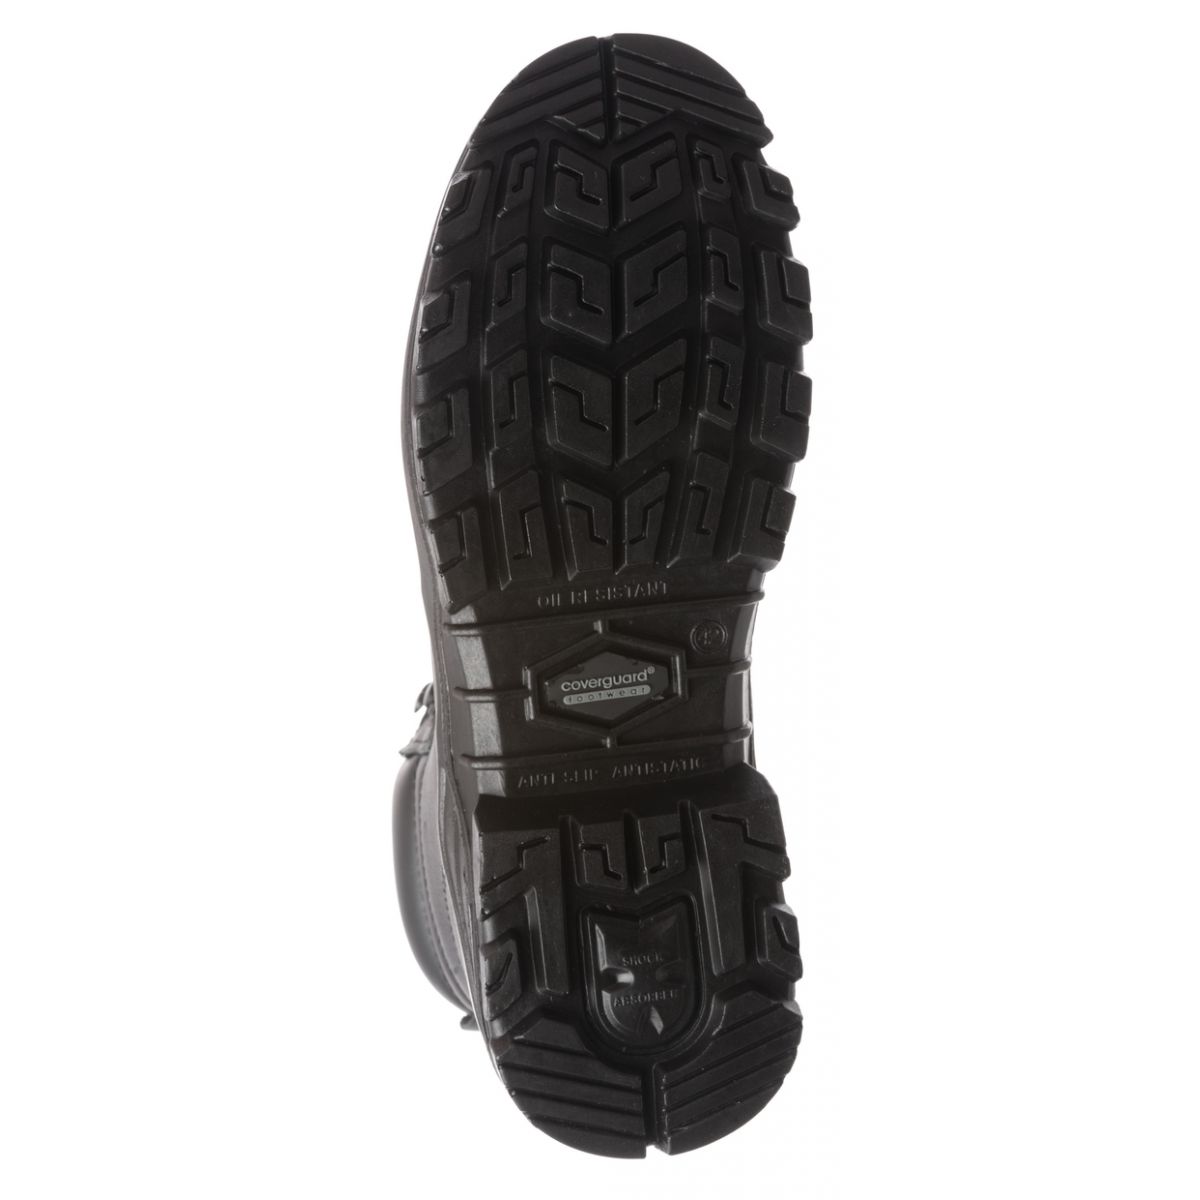 Chaussure de sécurité AVENTURINE S3 haute noir composite - COVERGUARD - Taille 38 1